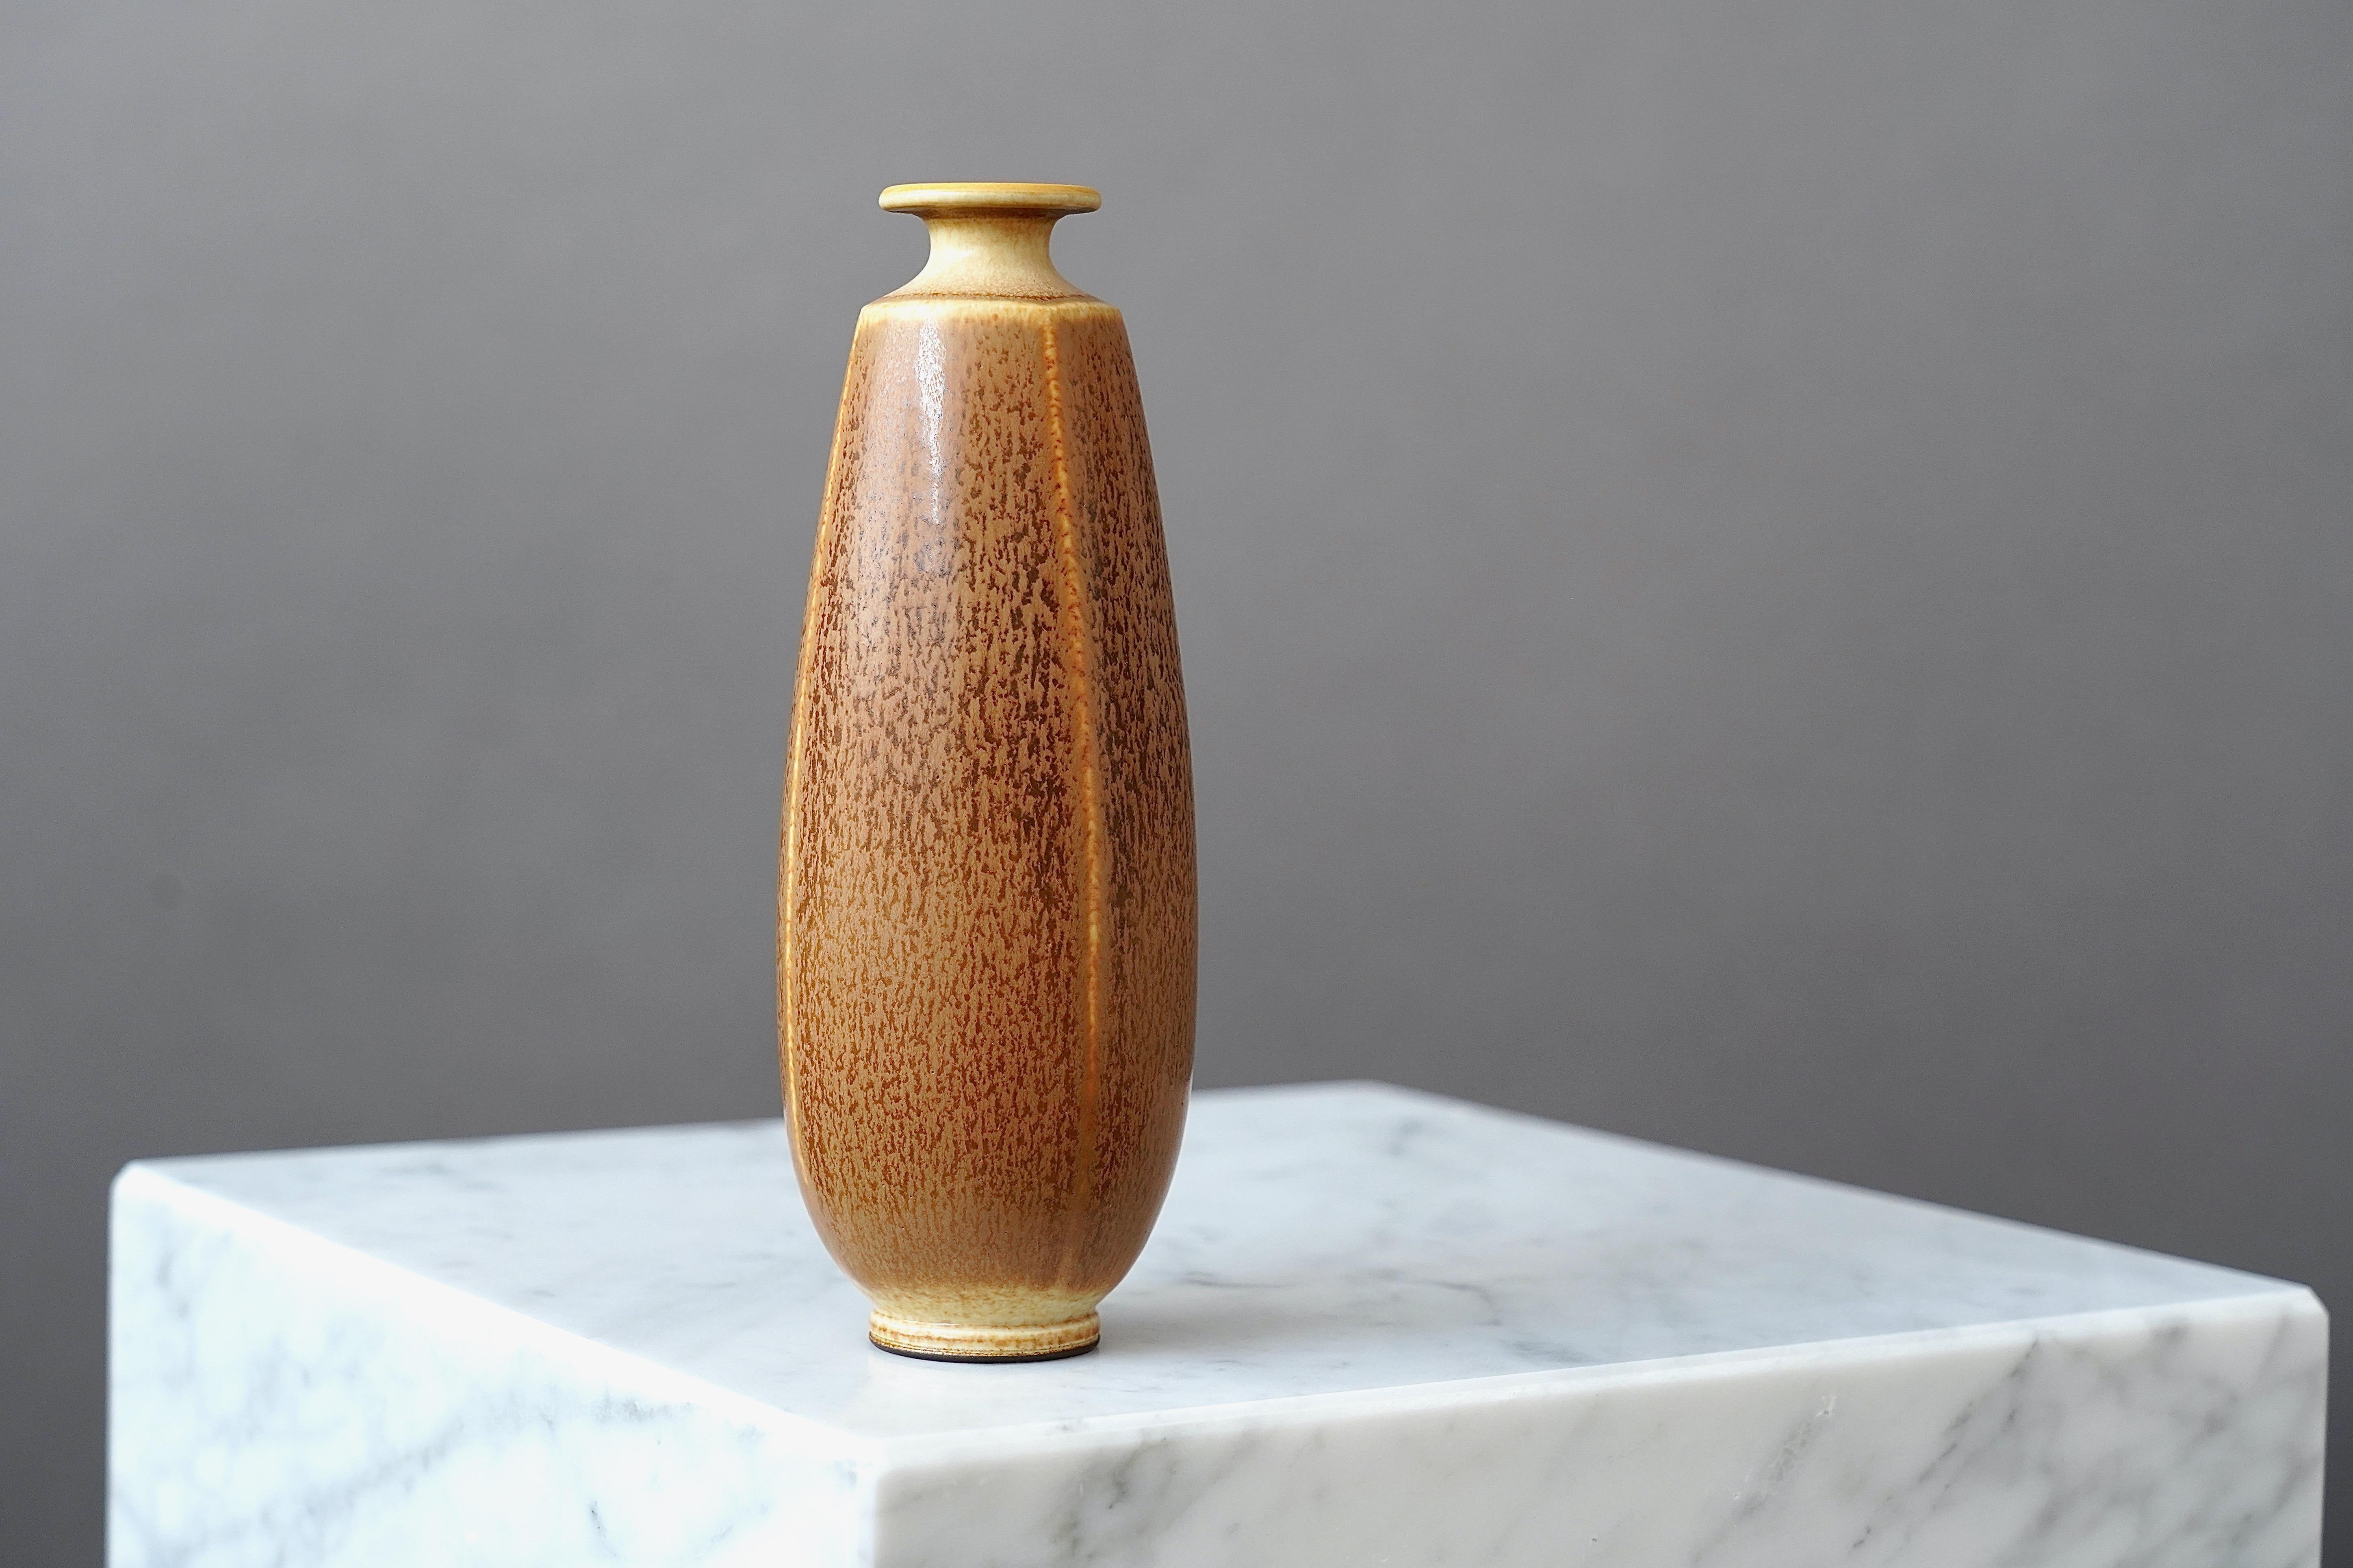 Un magnifique vase en grès avec une glaçure étonnante en forme de fourrure de lièvre. 
Fabriqué par le maître lanceur Berndt Friberg, dans l'atelier de l'artiste à Gustavsberg, en Suède.

Excellent état. Signature incisée 